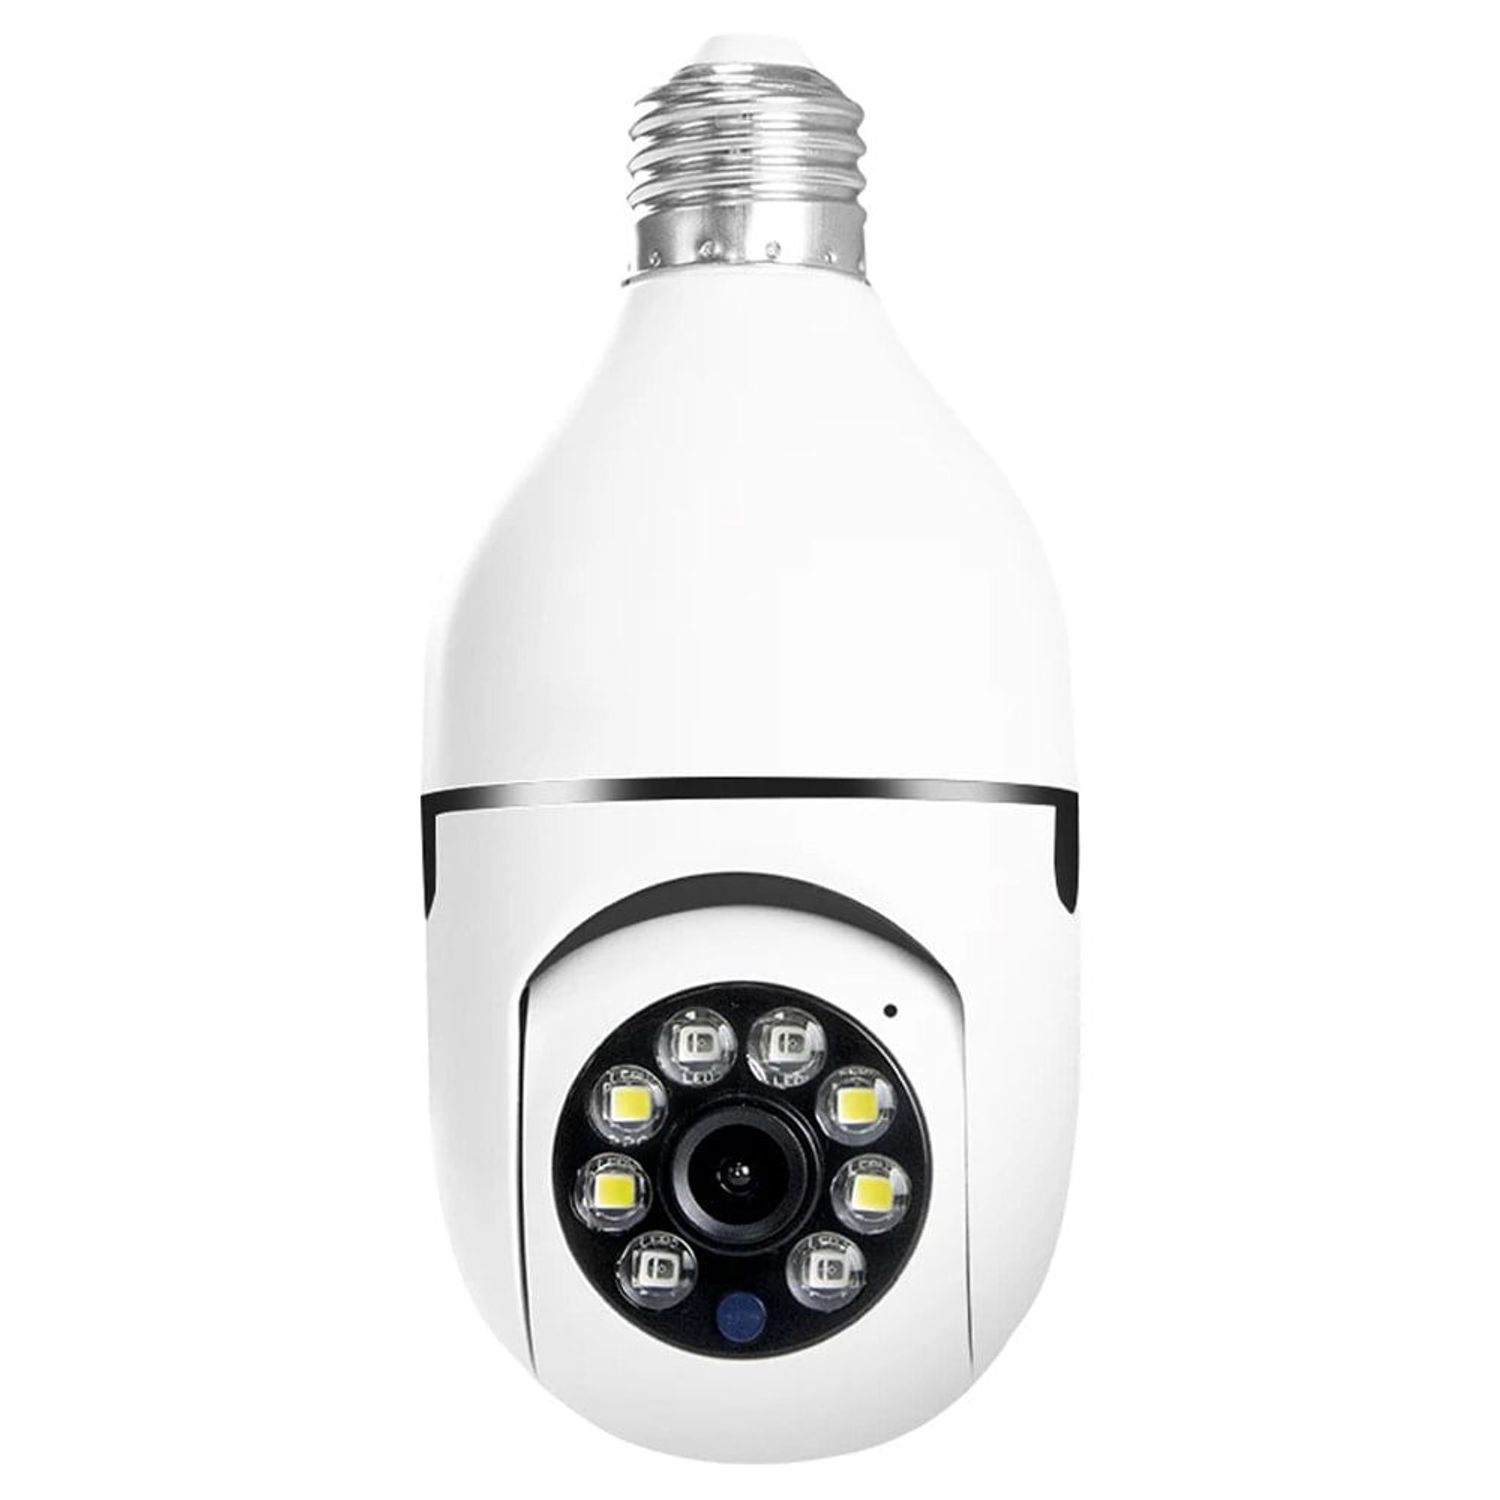  OLTEC Cámara de luz de seguridad 1080p WiFi inalámbrico  inteligente espía cámara de seguridad para el hogar sistema de video de vigilancia  bombilla panorámica cámara 1080 IP 360 ojo de pez